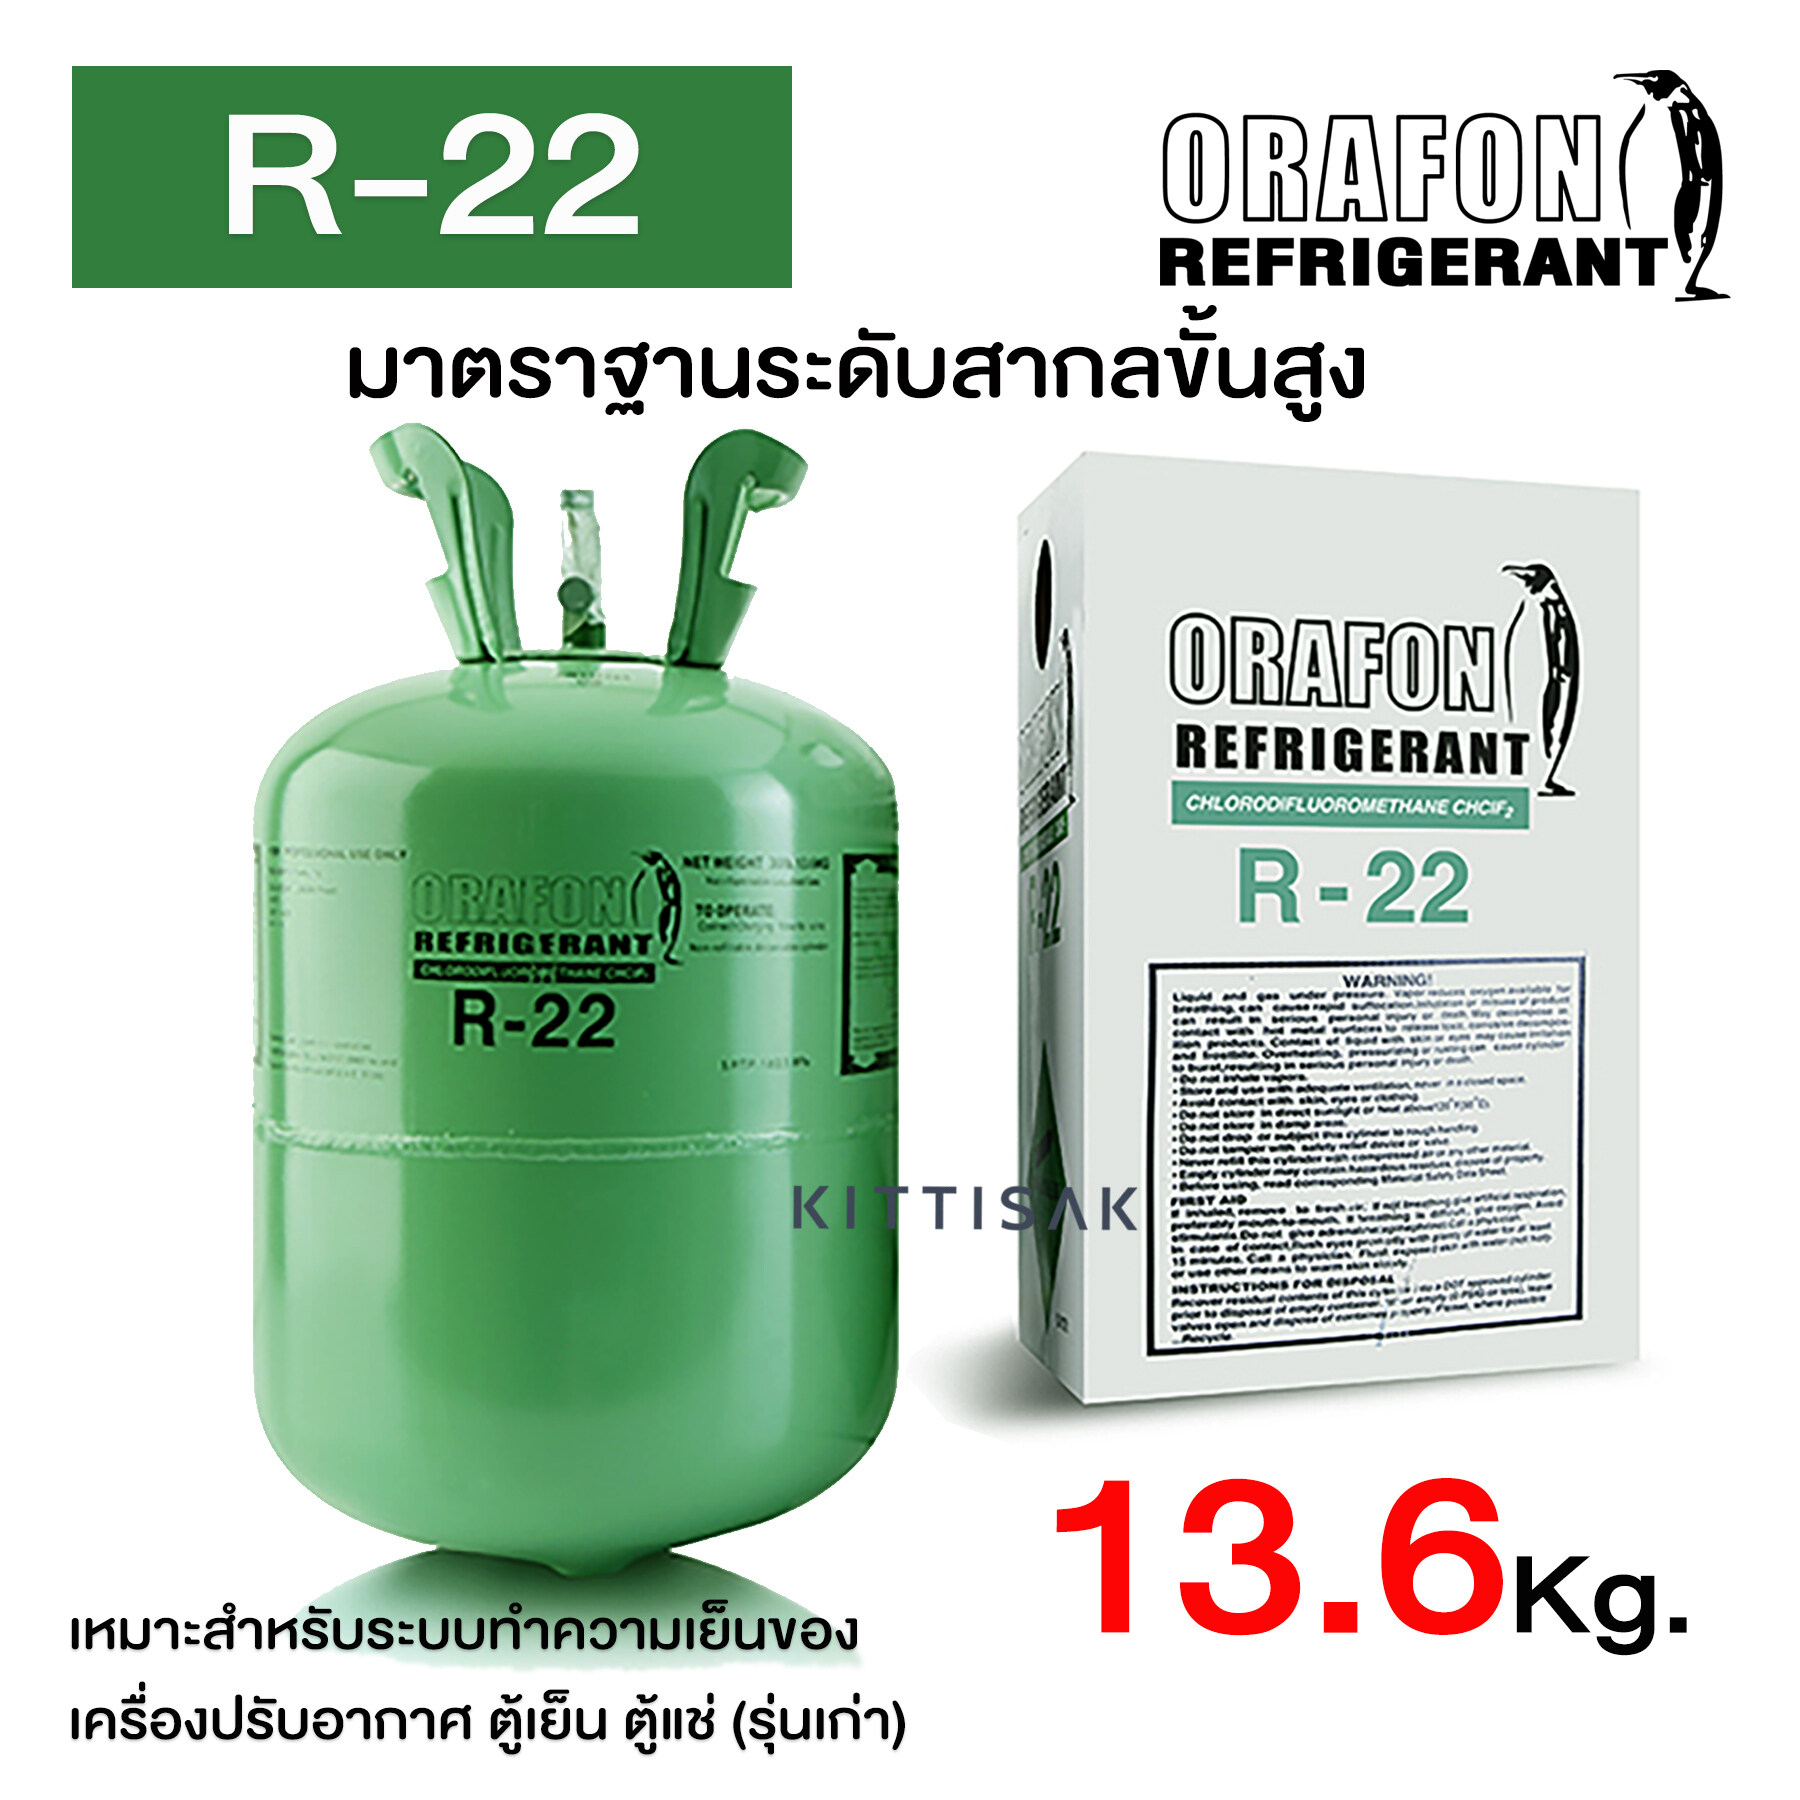 น้ำยาแอร์ R22 ยี่ห้อ ORAFON ขนาด 13.6 กก.